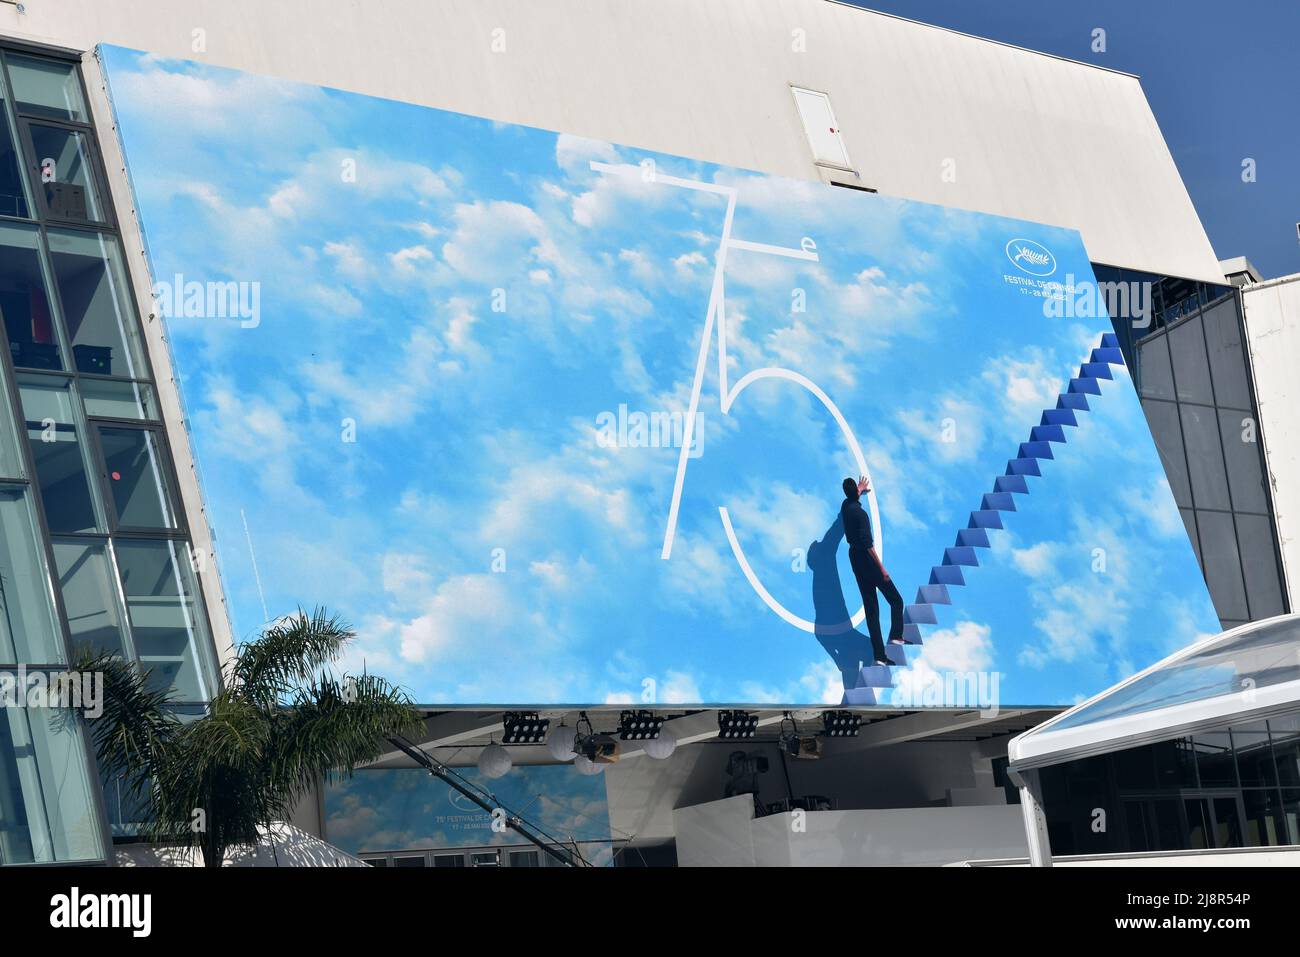 Francia, Cannes, el cartel oficial del Festival Internacional de Cine de 75th. Este año el tema es una imagen de la película Truman show. Foto de stock